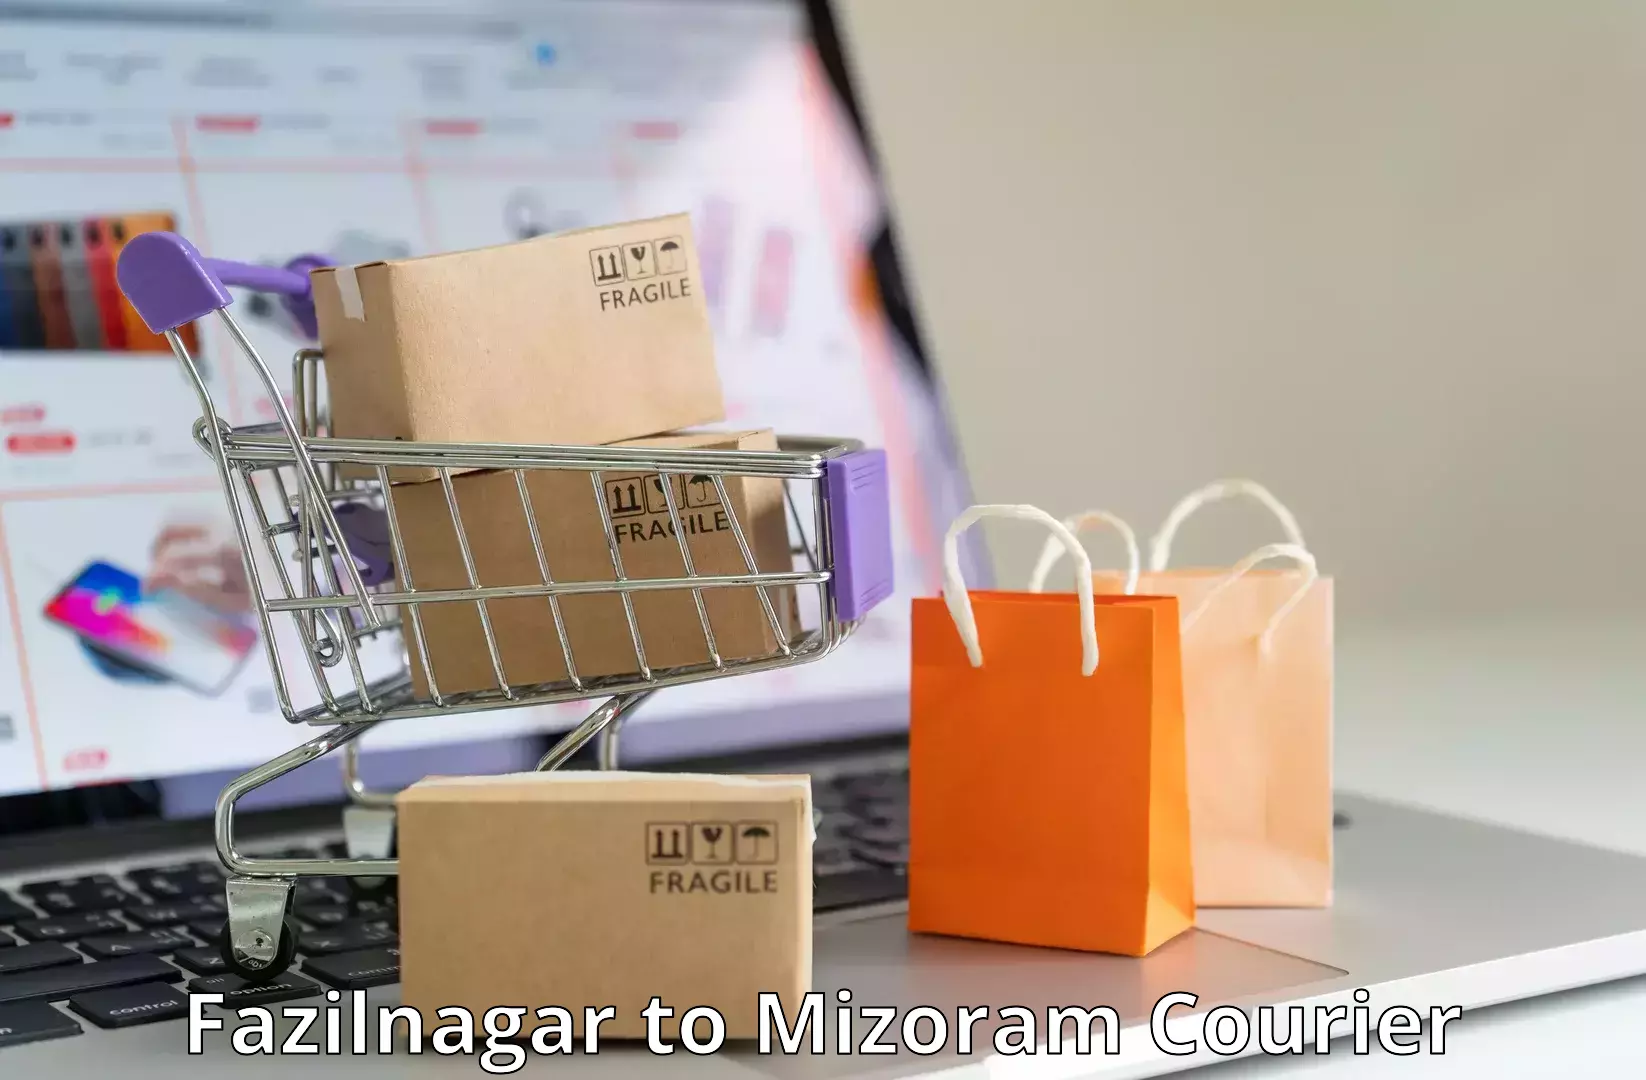 Business courier solutions Fazilnagar to Mizoram